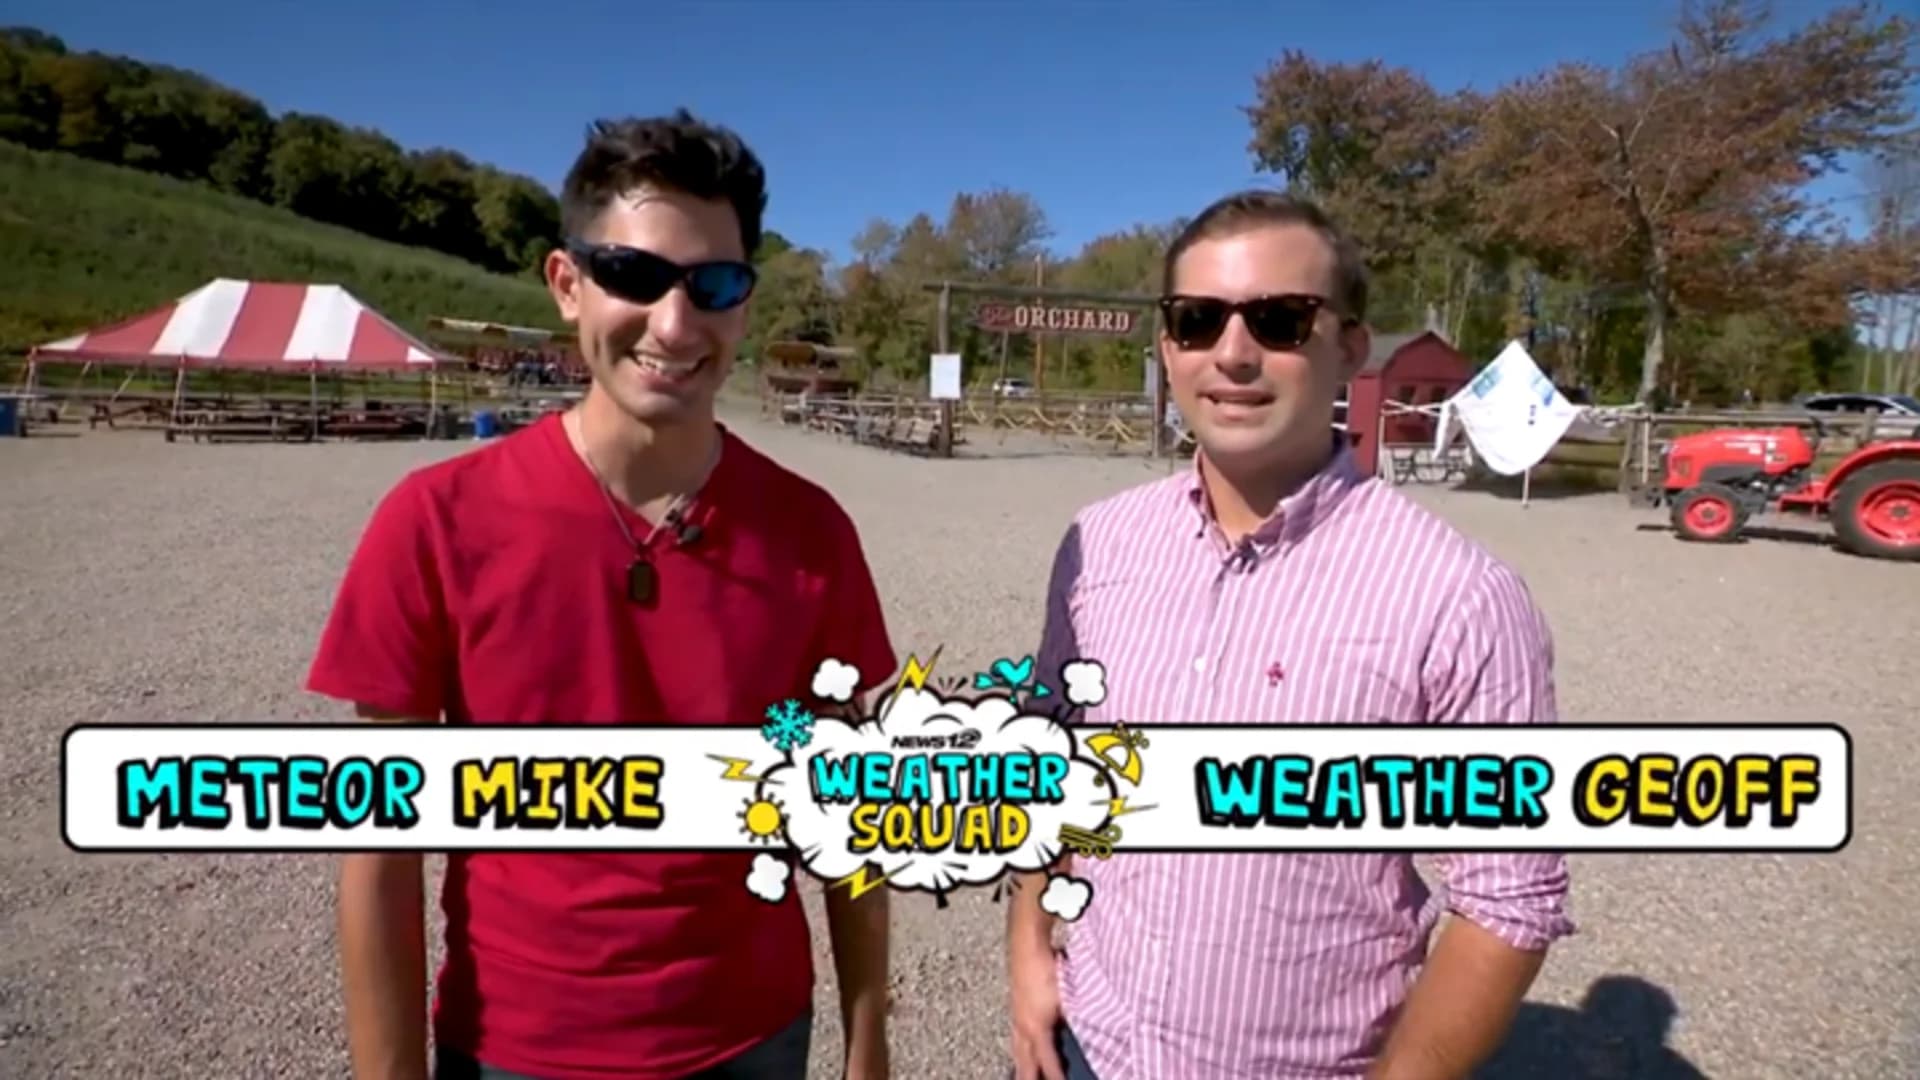 News 12 Weather Squad: Fall fun at Silverman's Farm